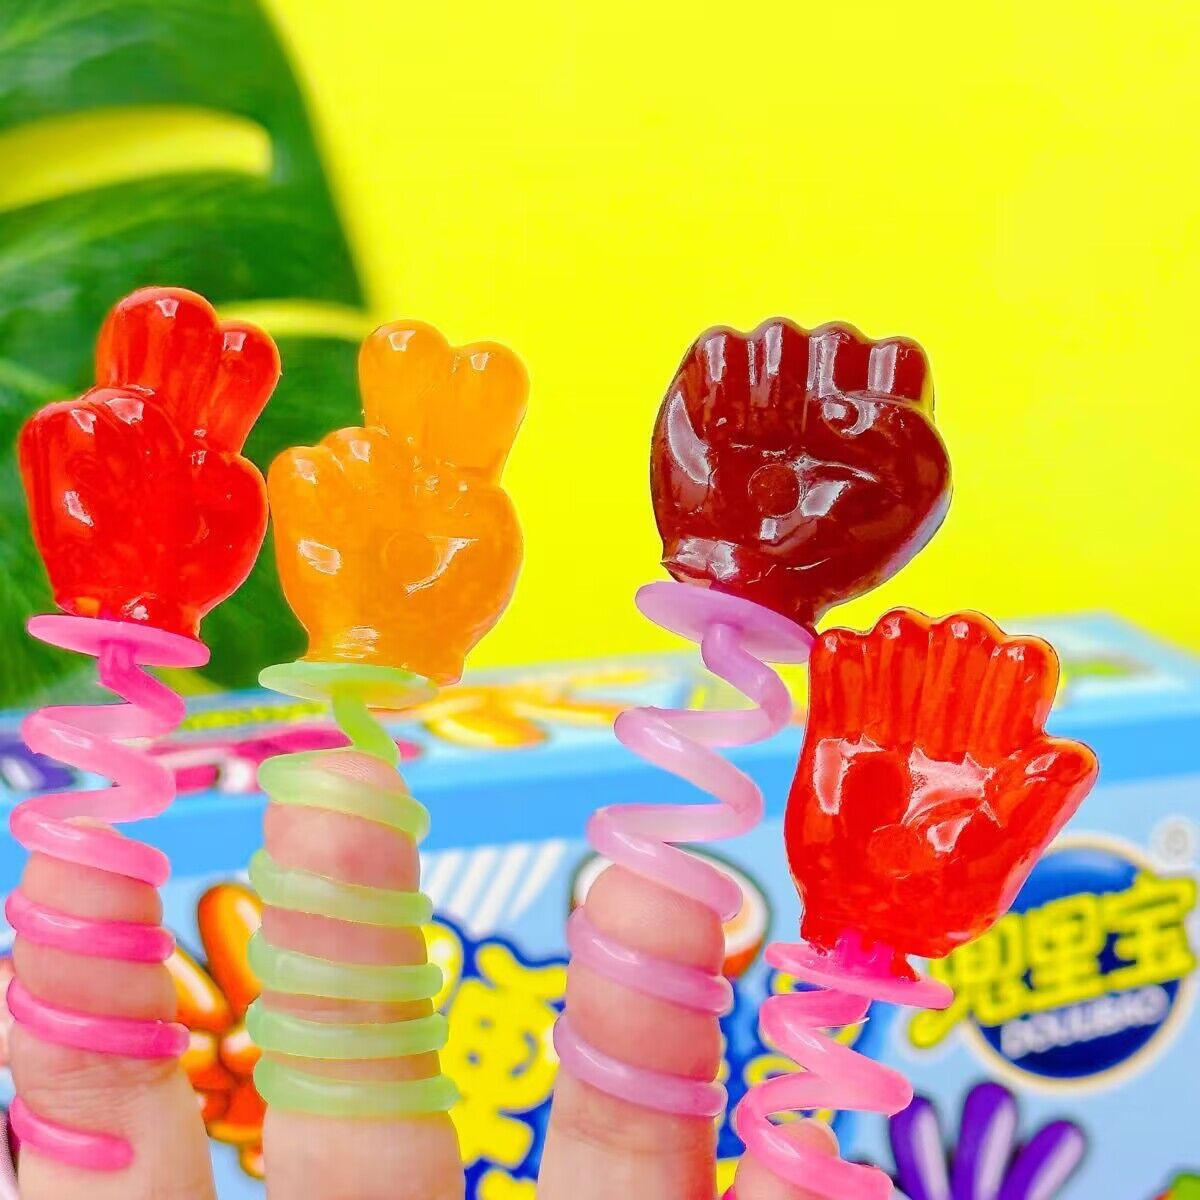 儿童创意猜拳石头剪刀布糖果可以戴在手指上的弹簧棒棒糖趣味零食-图2